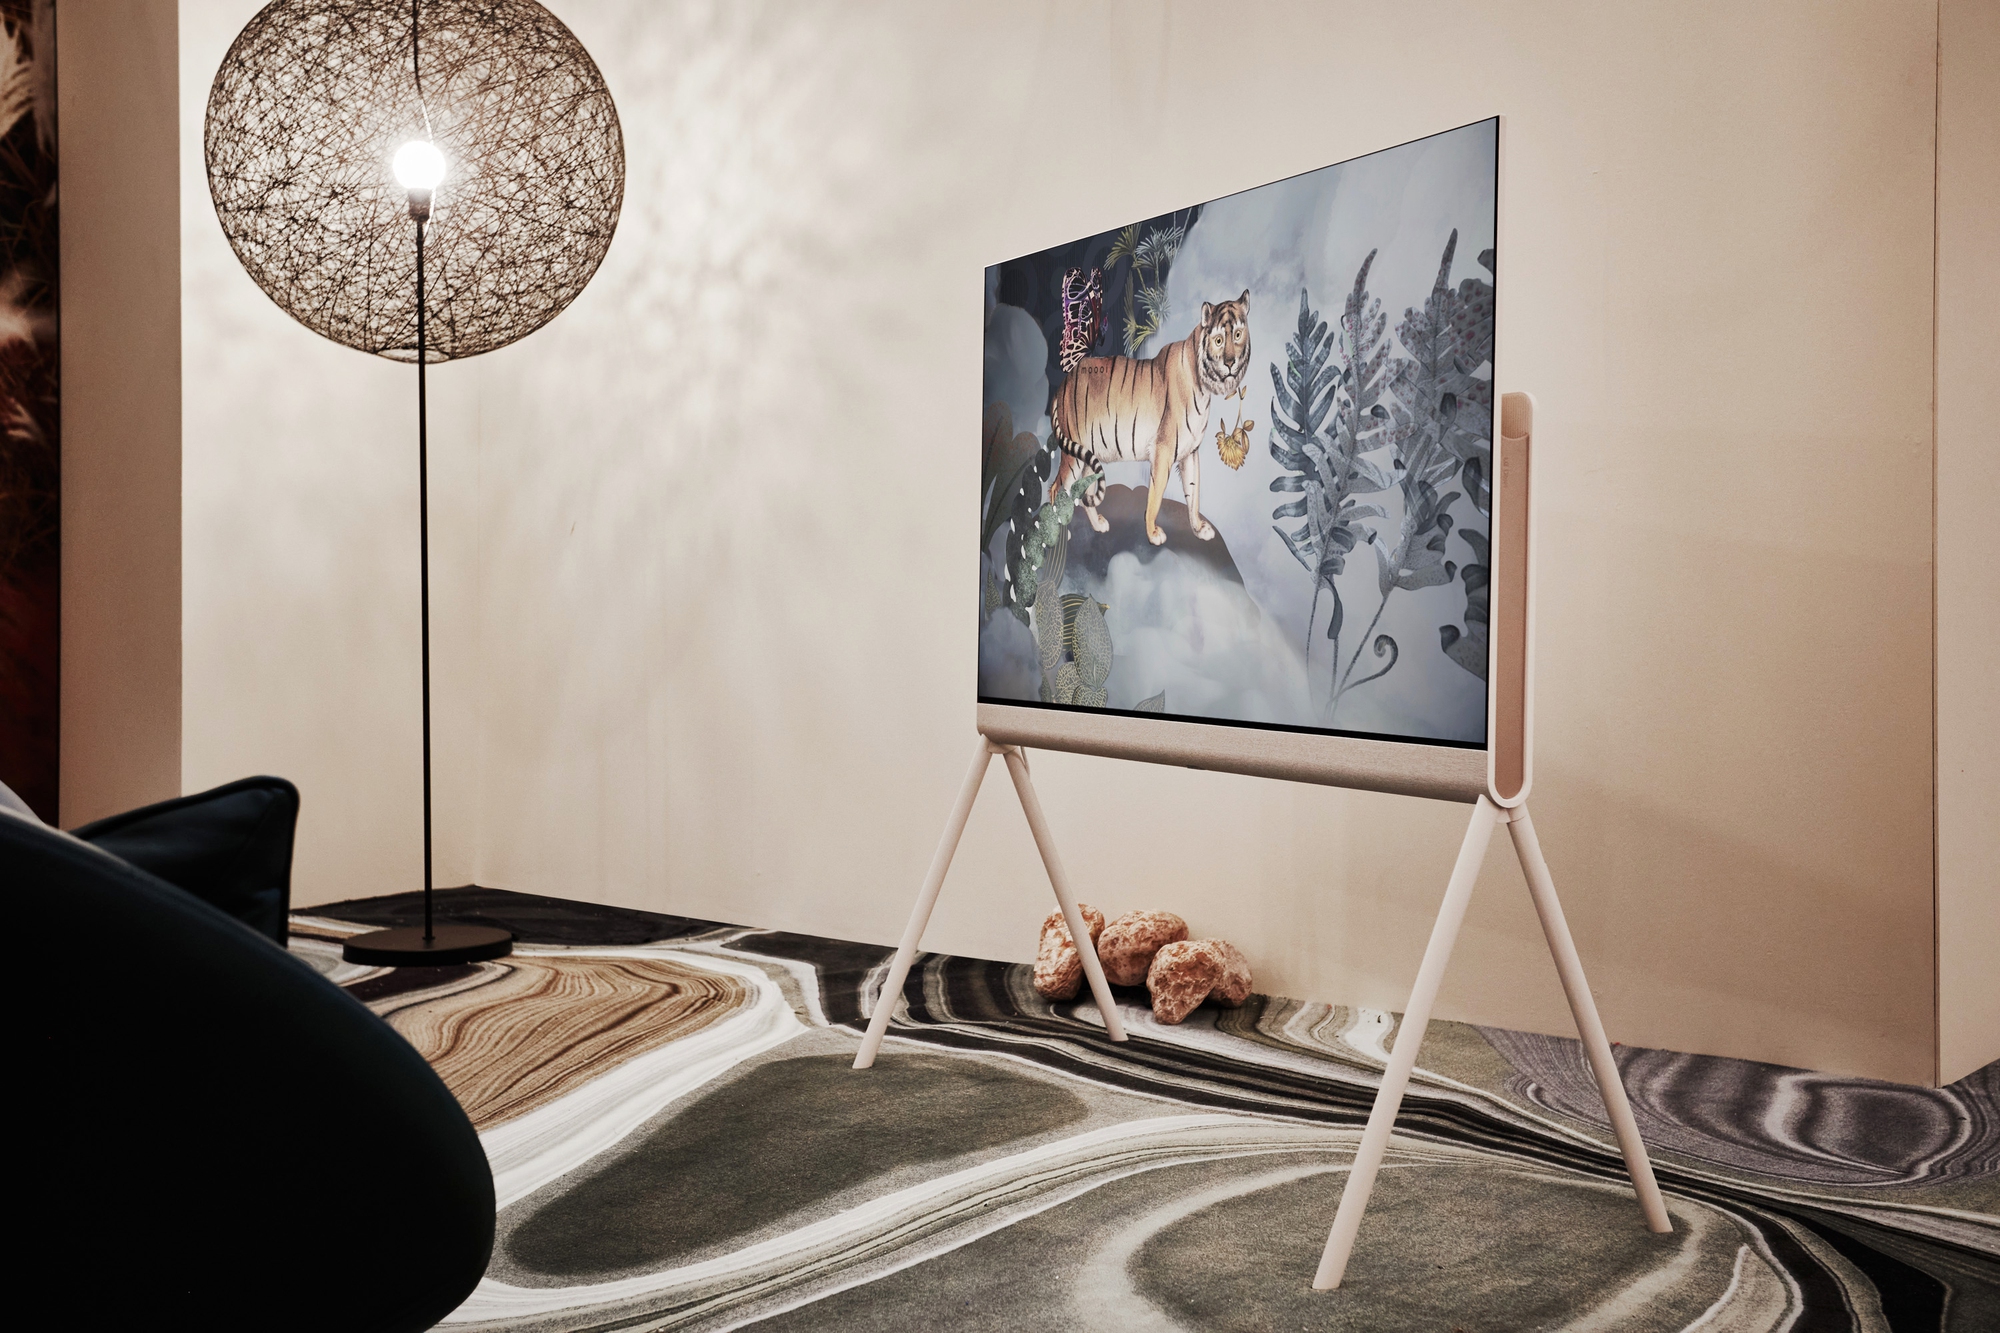 LG ra mắt TV Posé OLED với phong cách nghệ thuật, giá 54,9 triệu đồng - Ảnh 2.